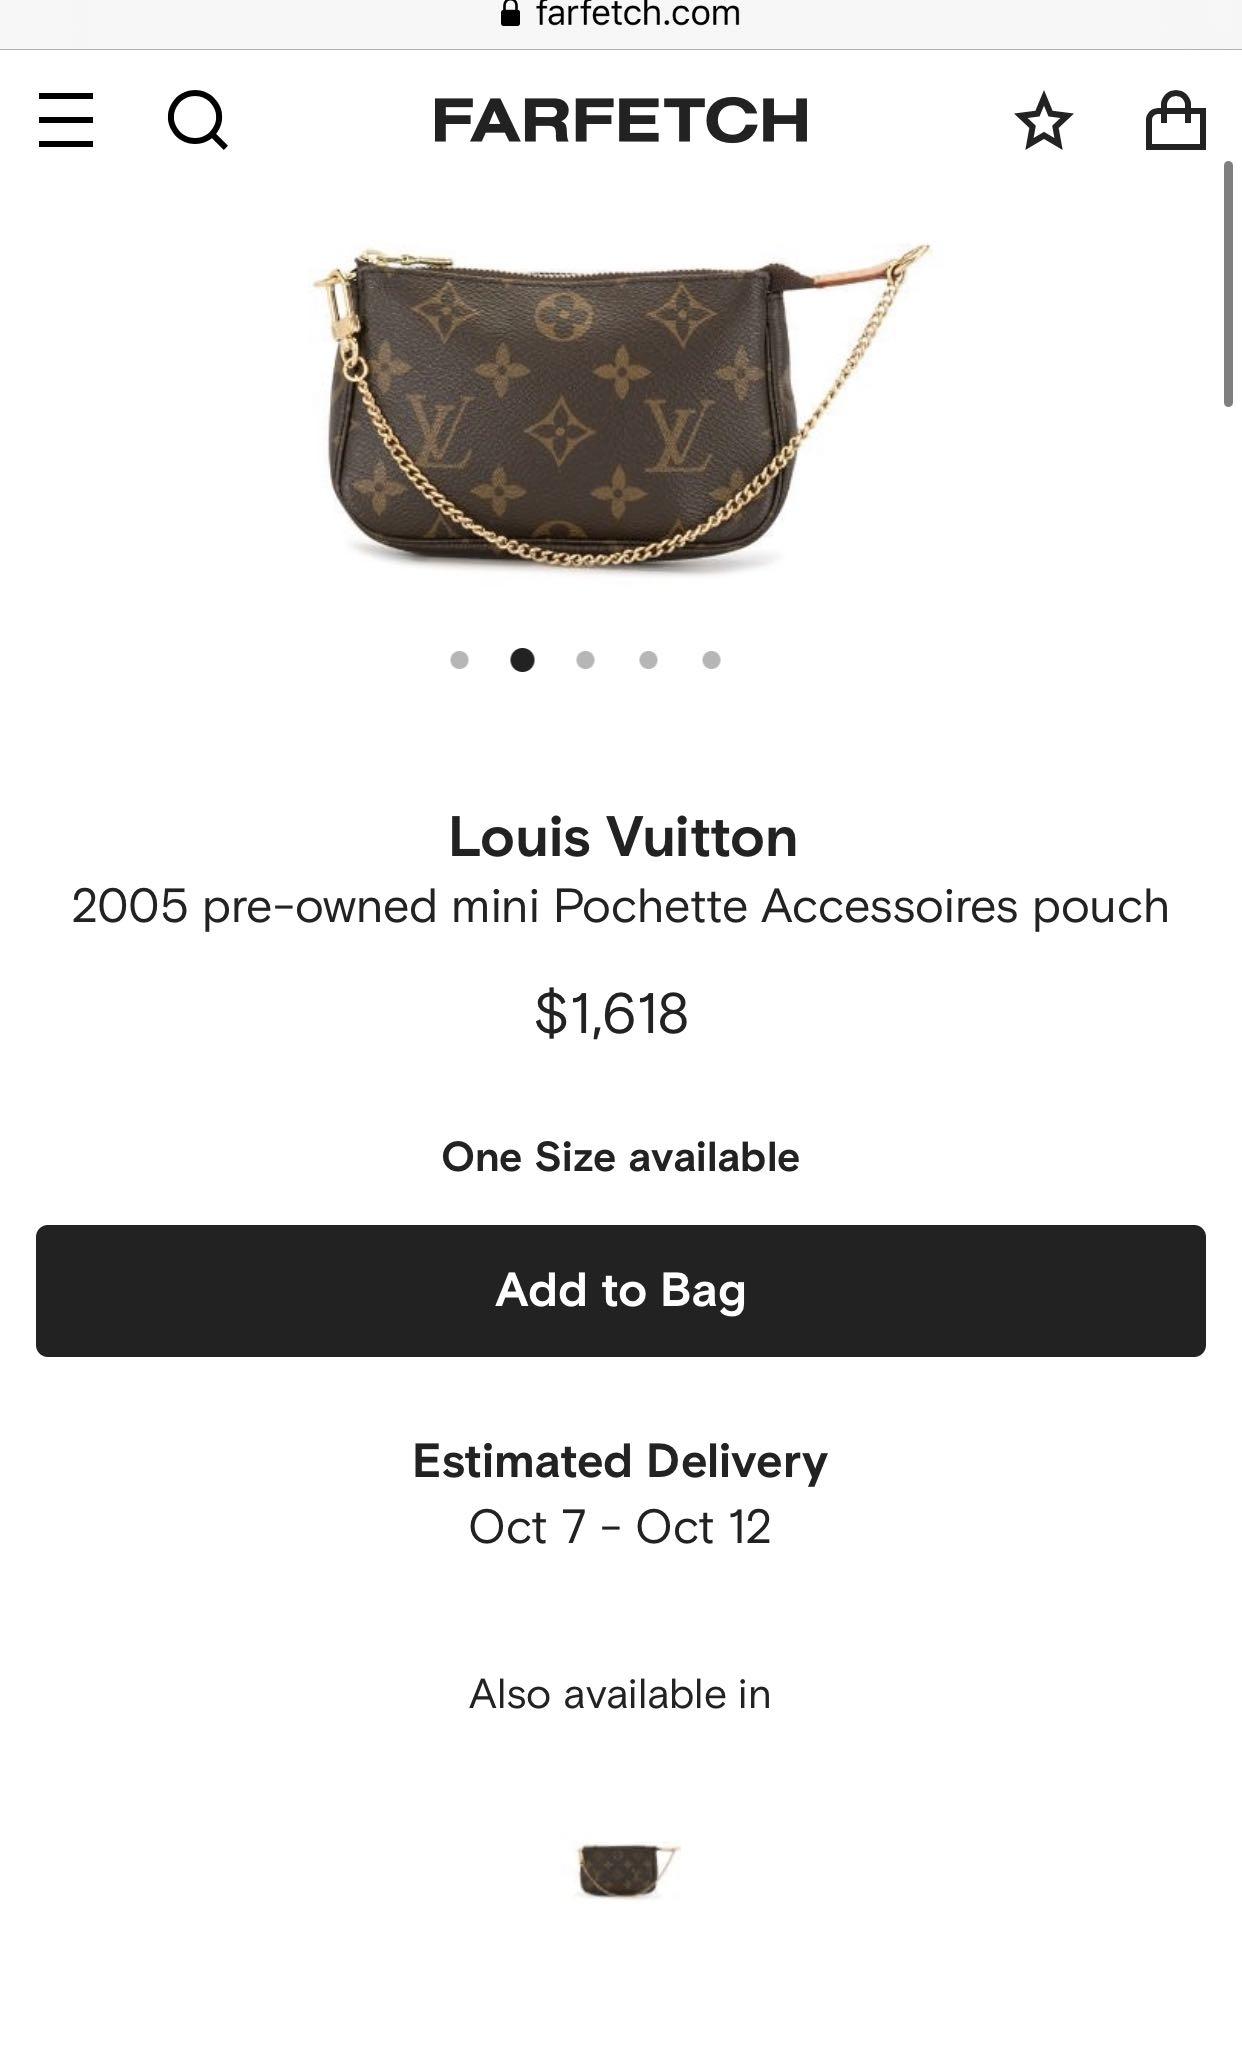 Louis Vuitton Mini Pochette Accessoires - Farfetch